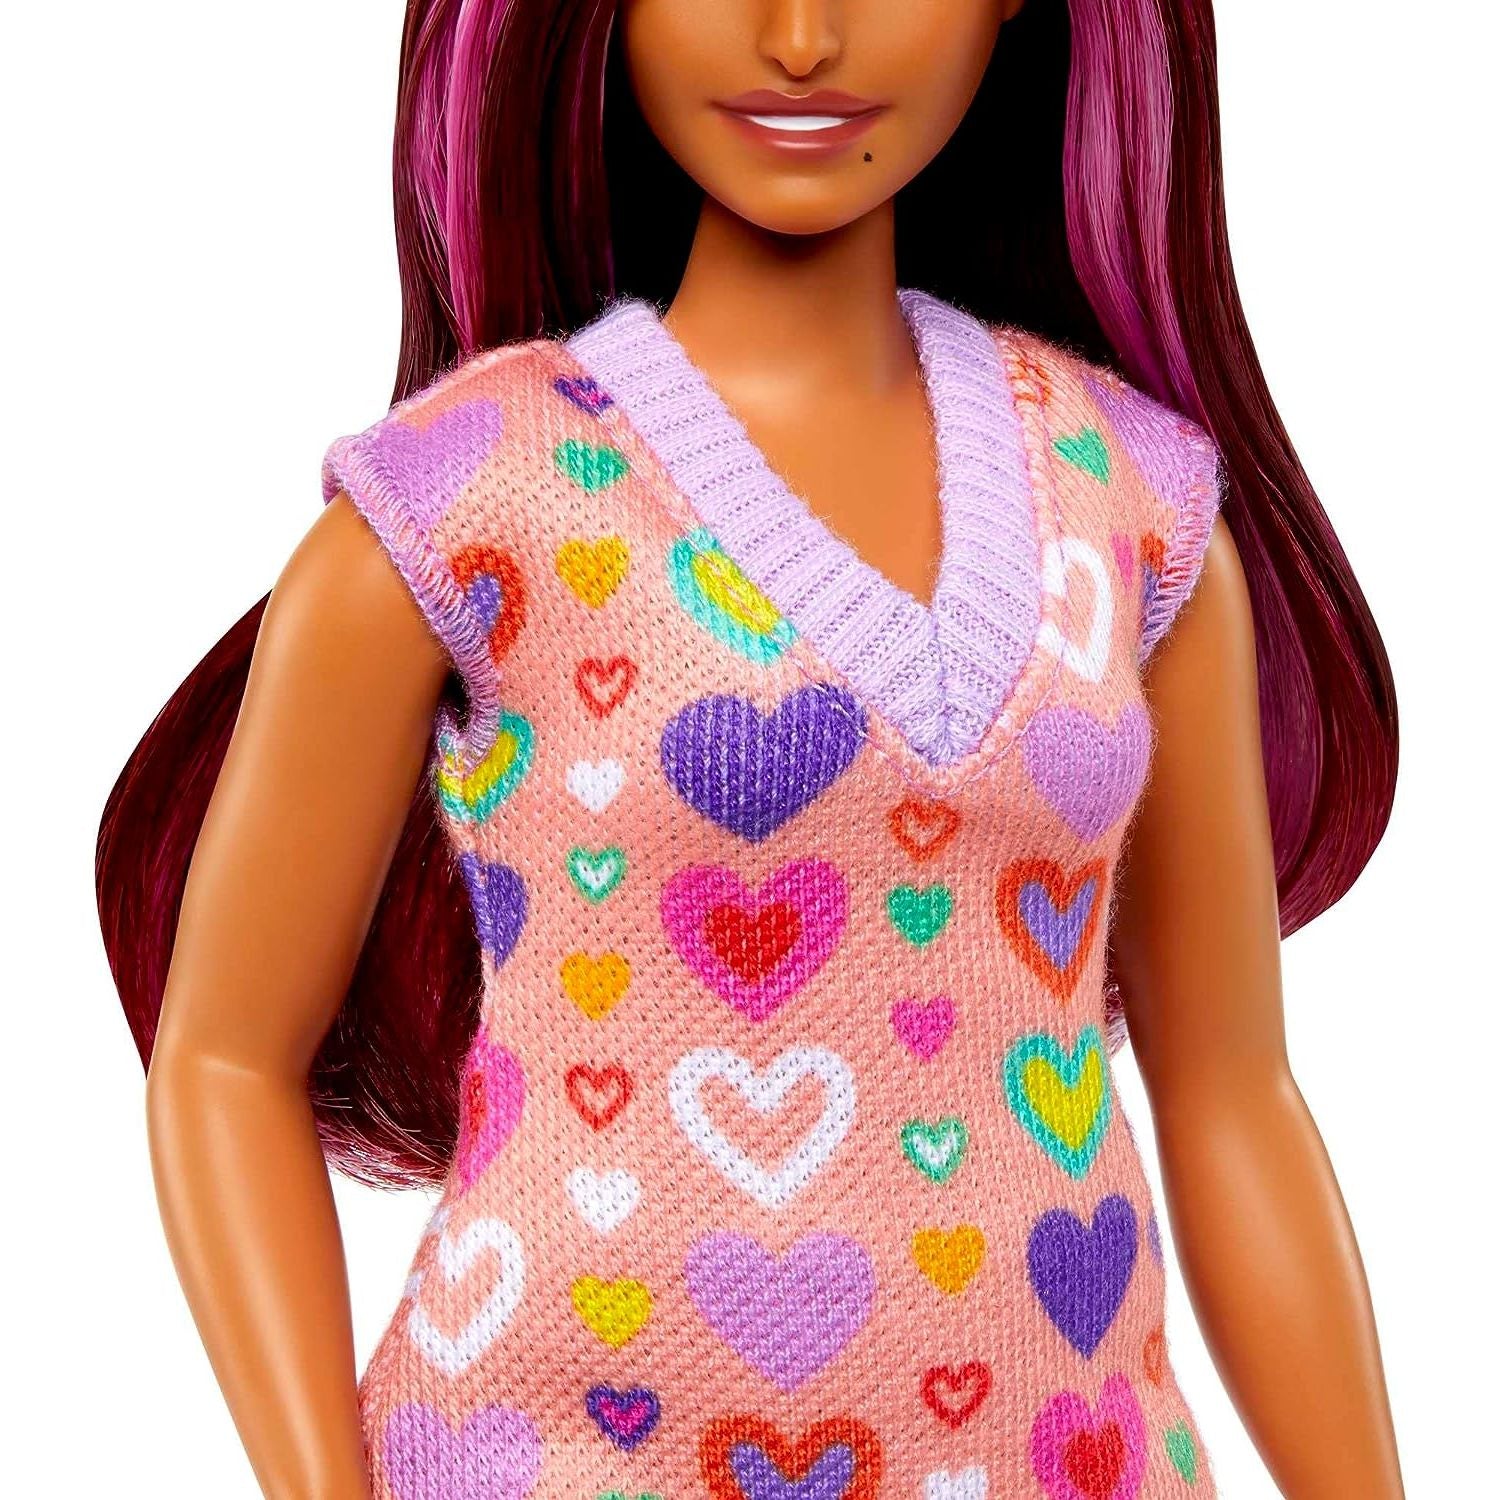 دمية Barbie Fashionistas رقم 207 مع فستان سترة بطبعة قلب ونظارة شمسية وحذاء ذو نعل سميك صغير